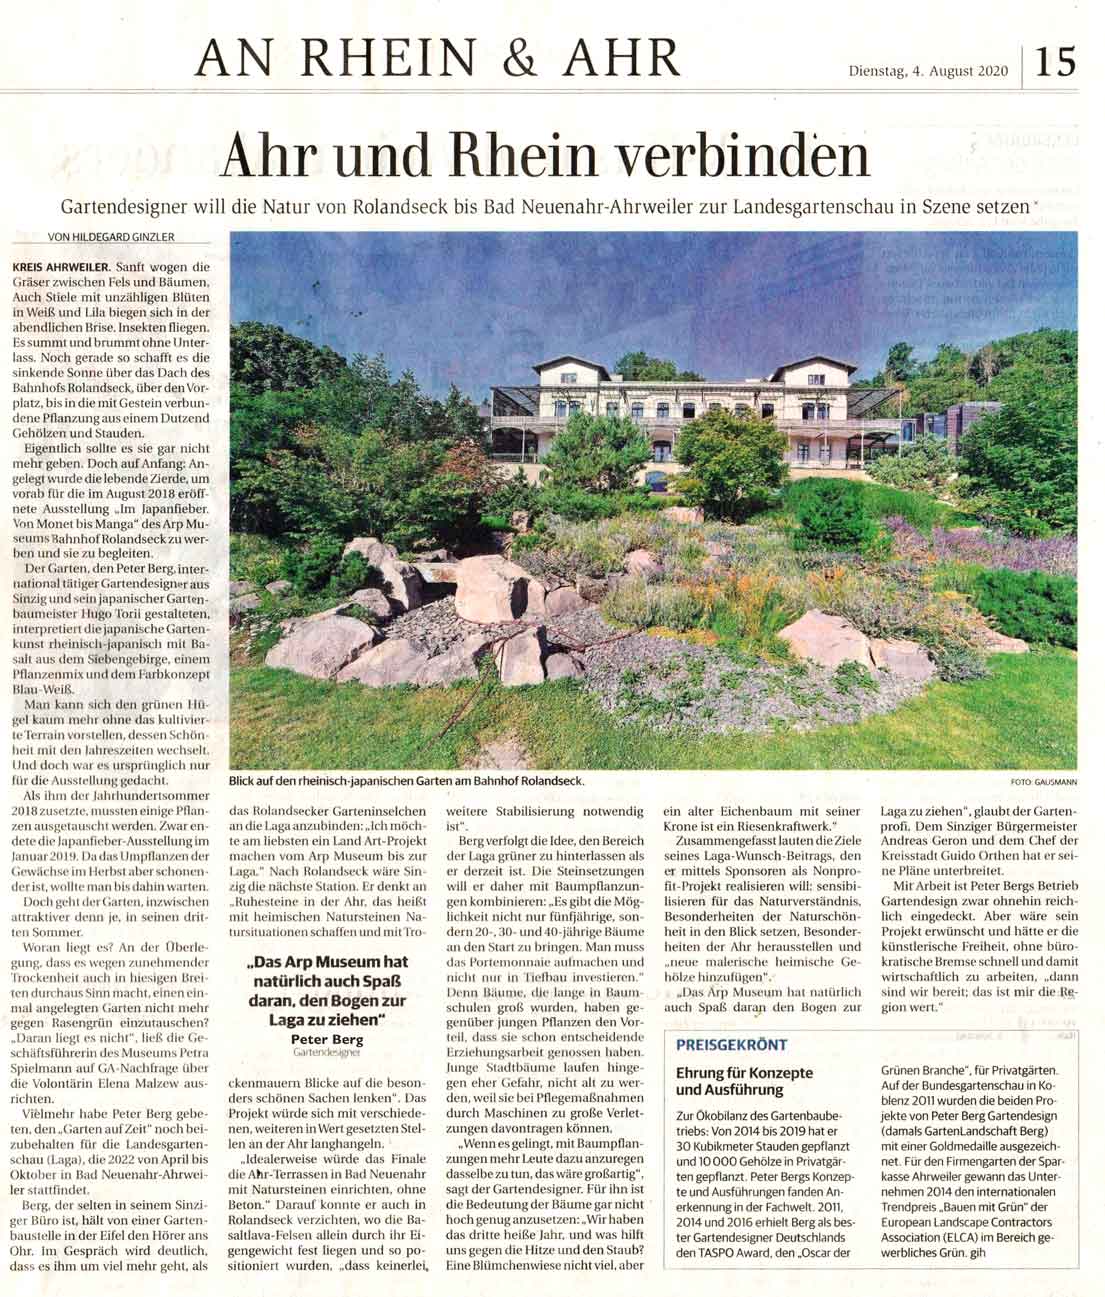 Zeitungsartikel über Gartenprojekt von Peter Berg